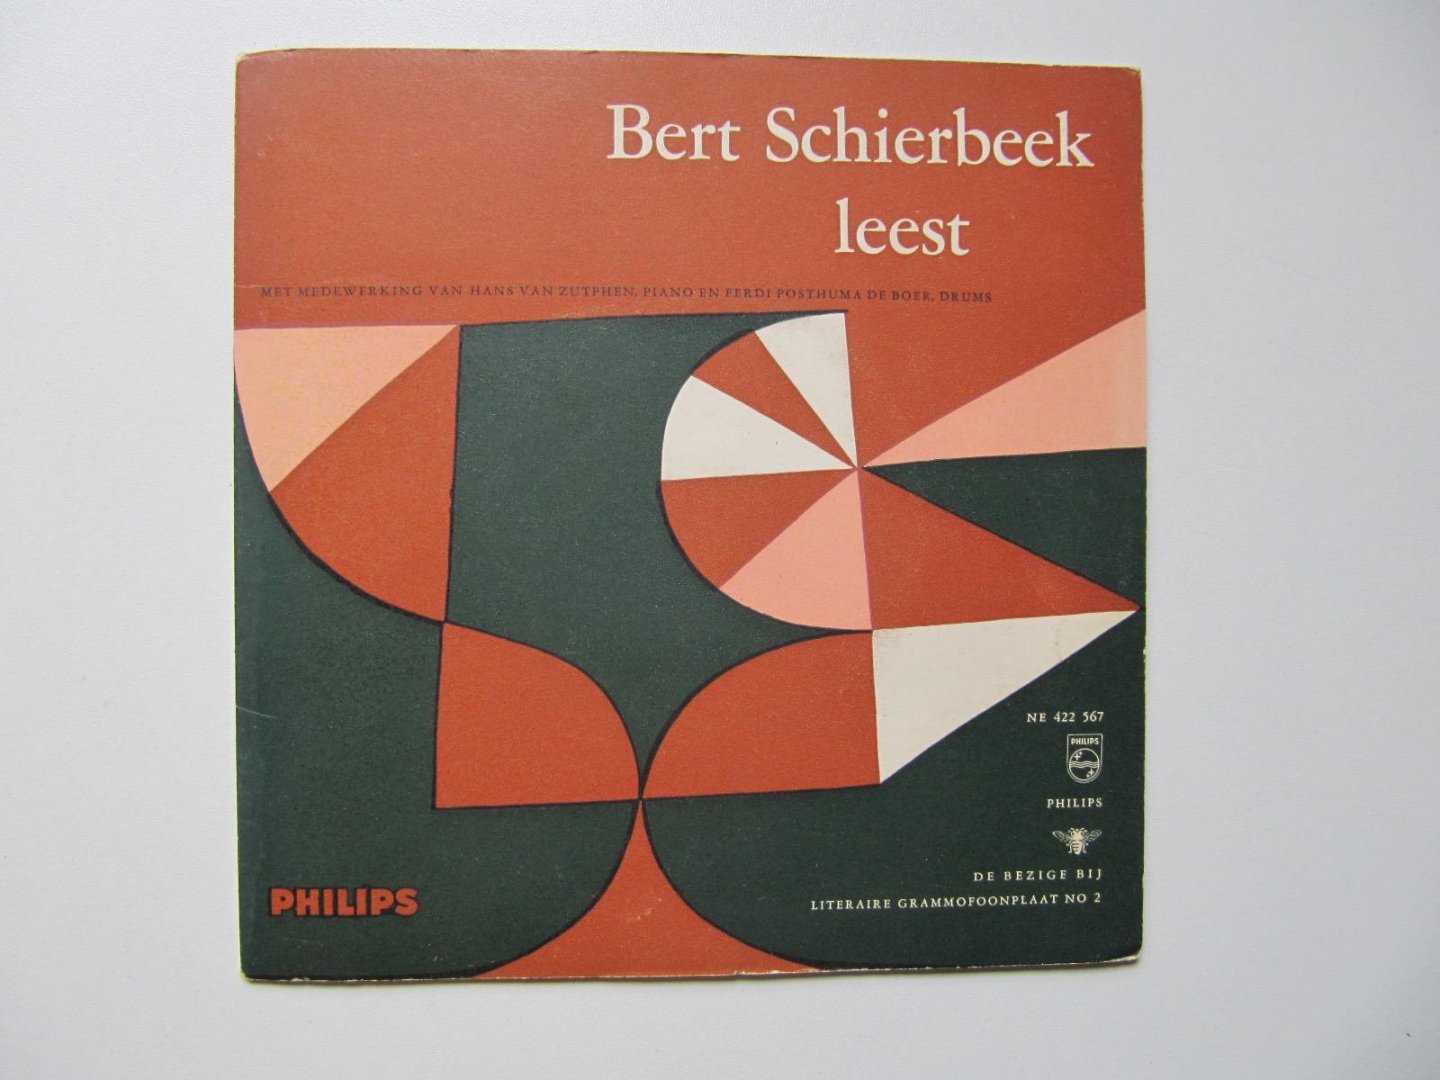 Bert Schierbeek - Bert Schierbeek leest